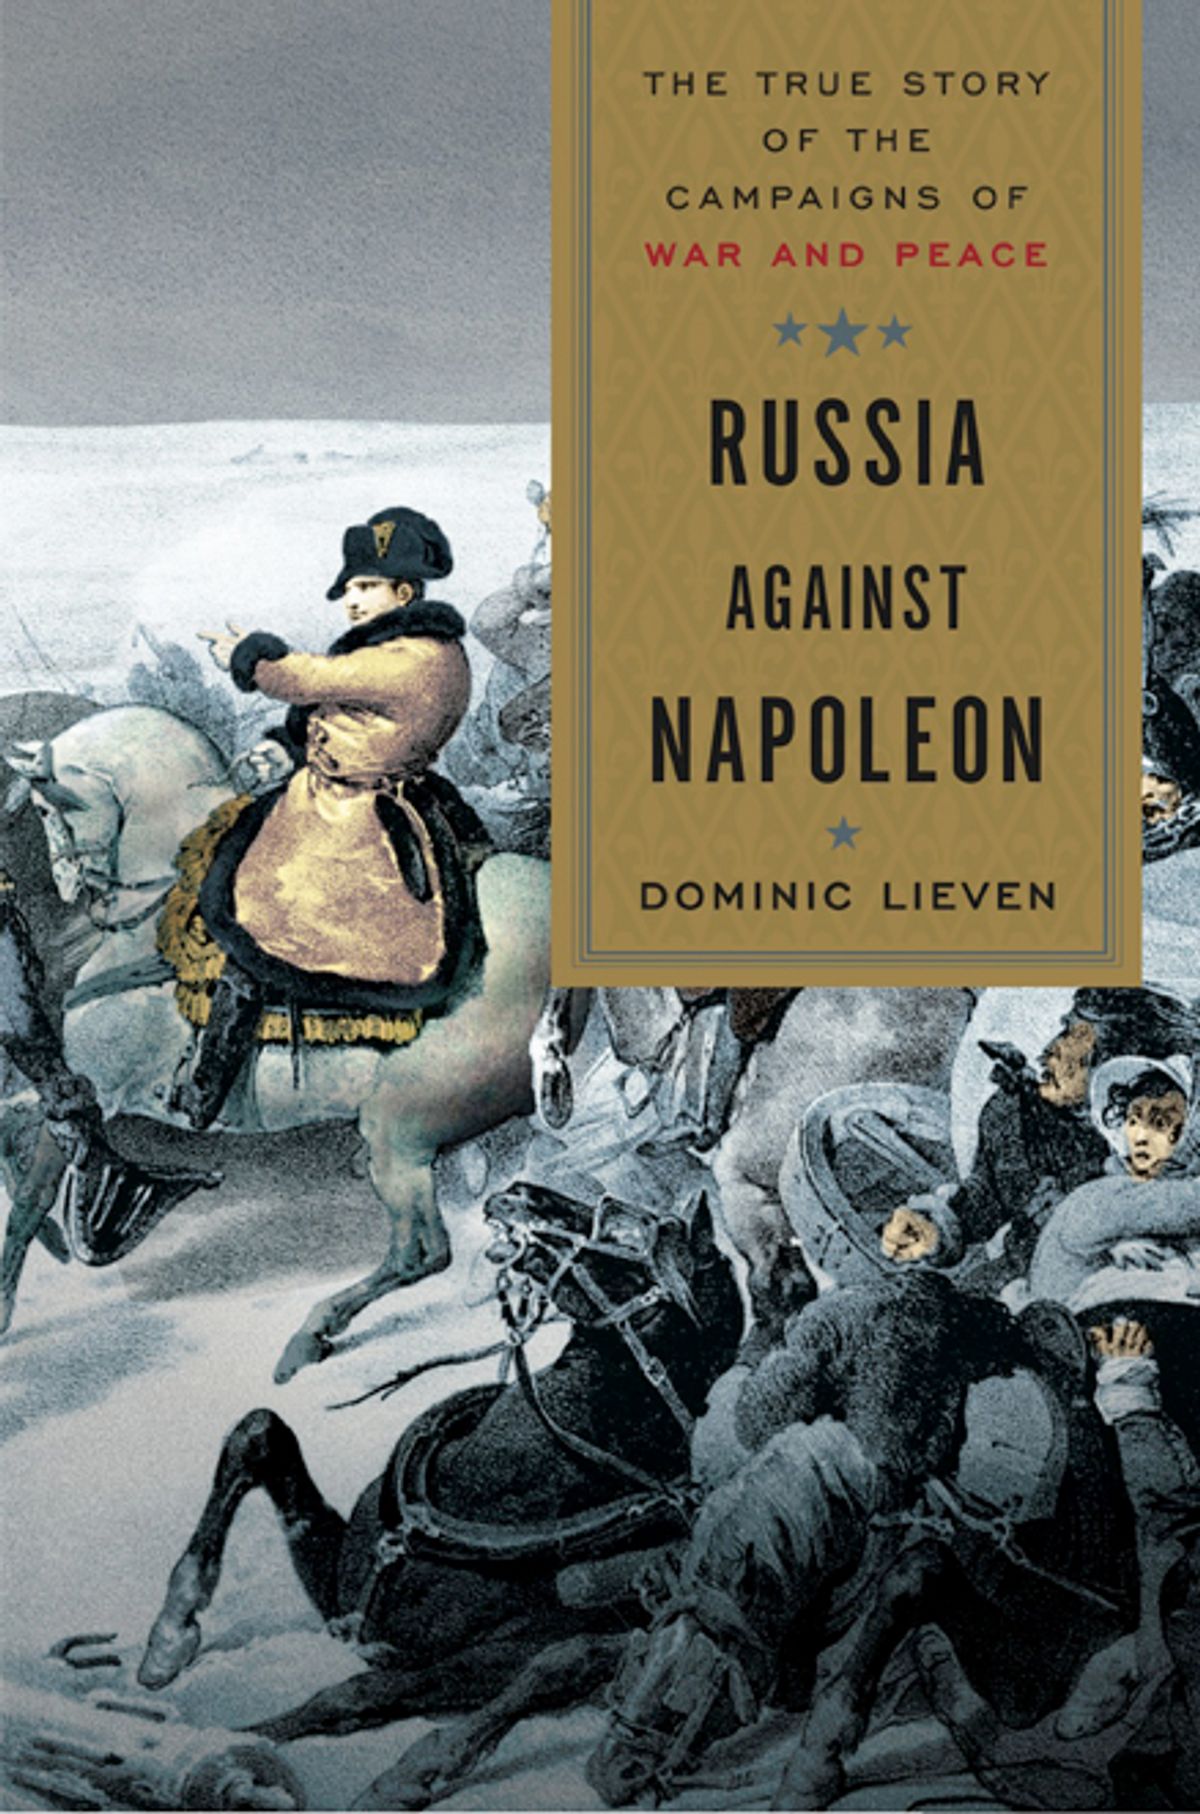 "Russia Against Napoleon"